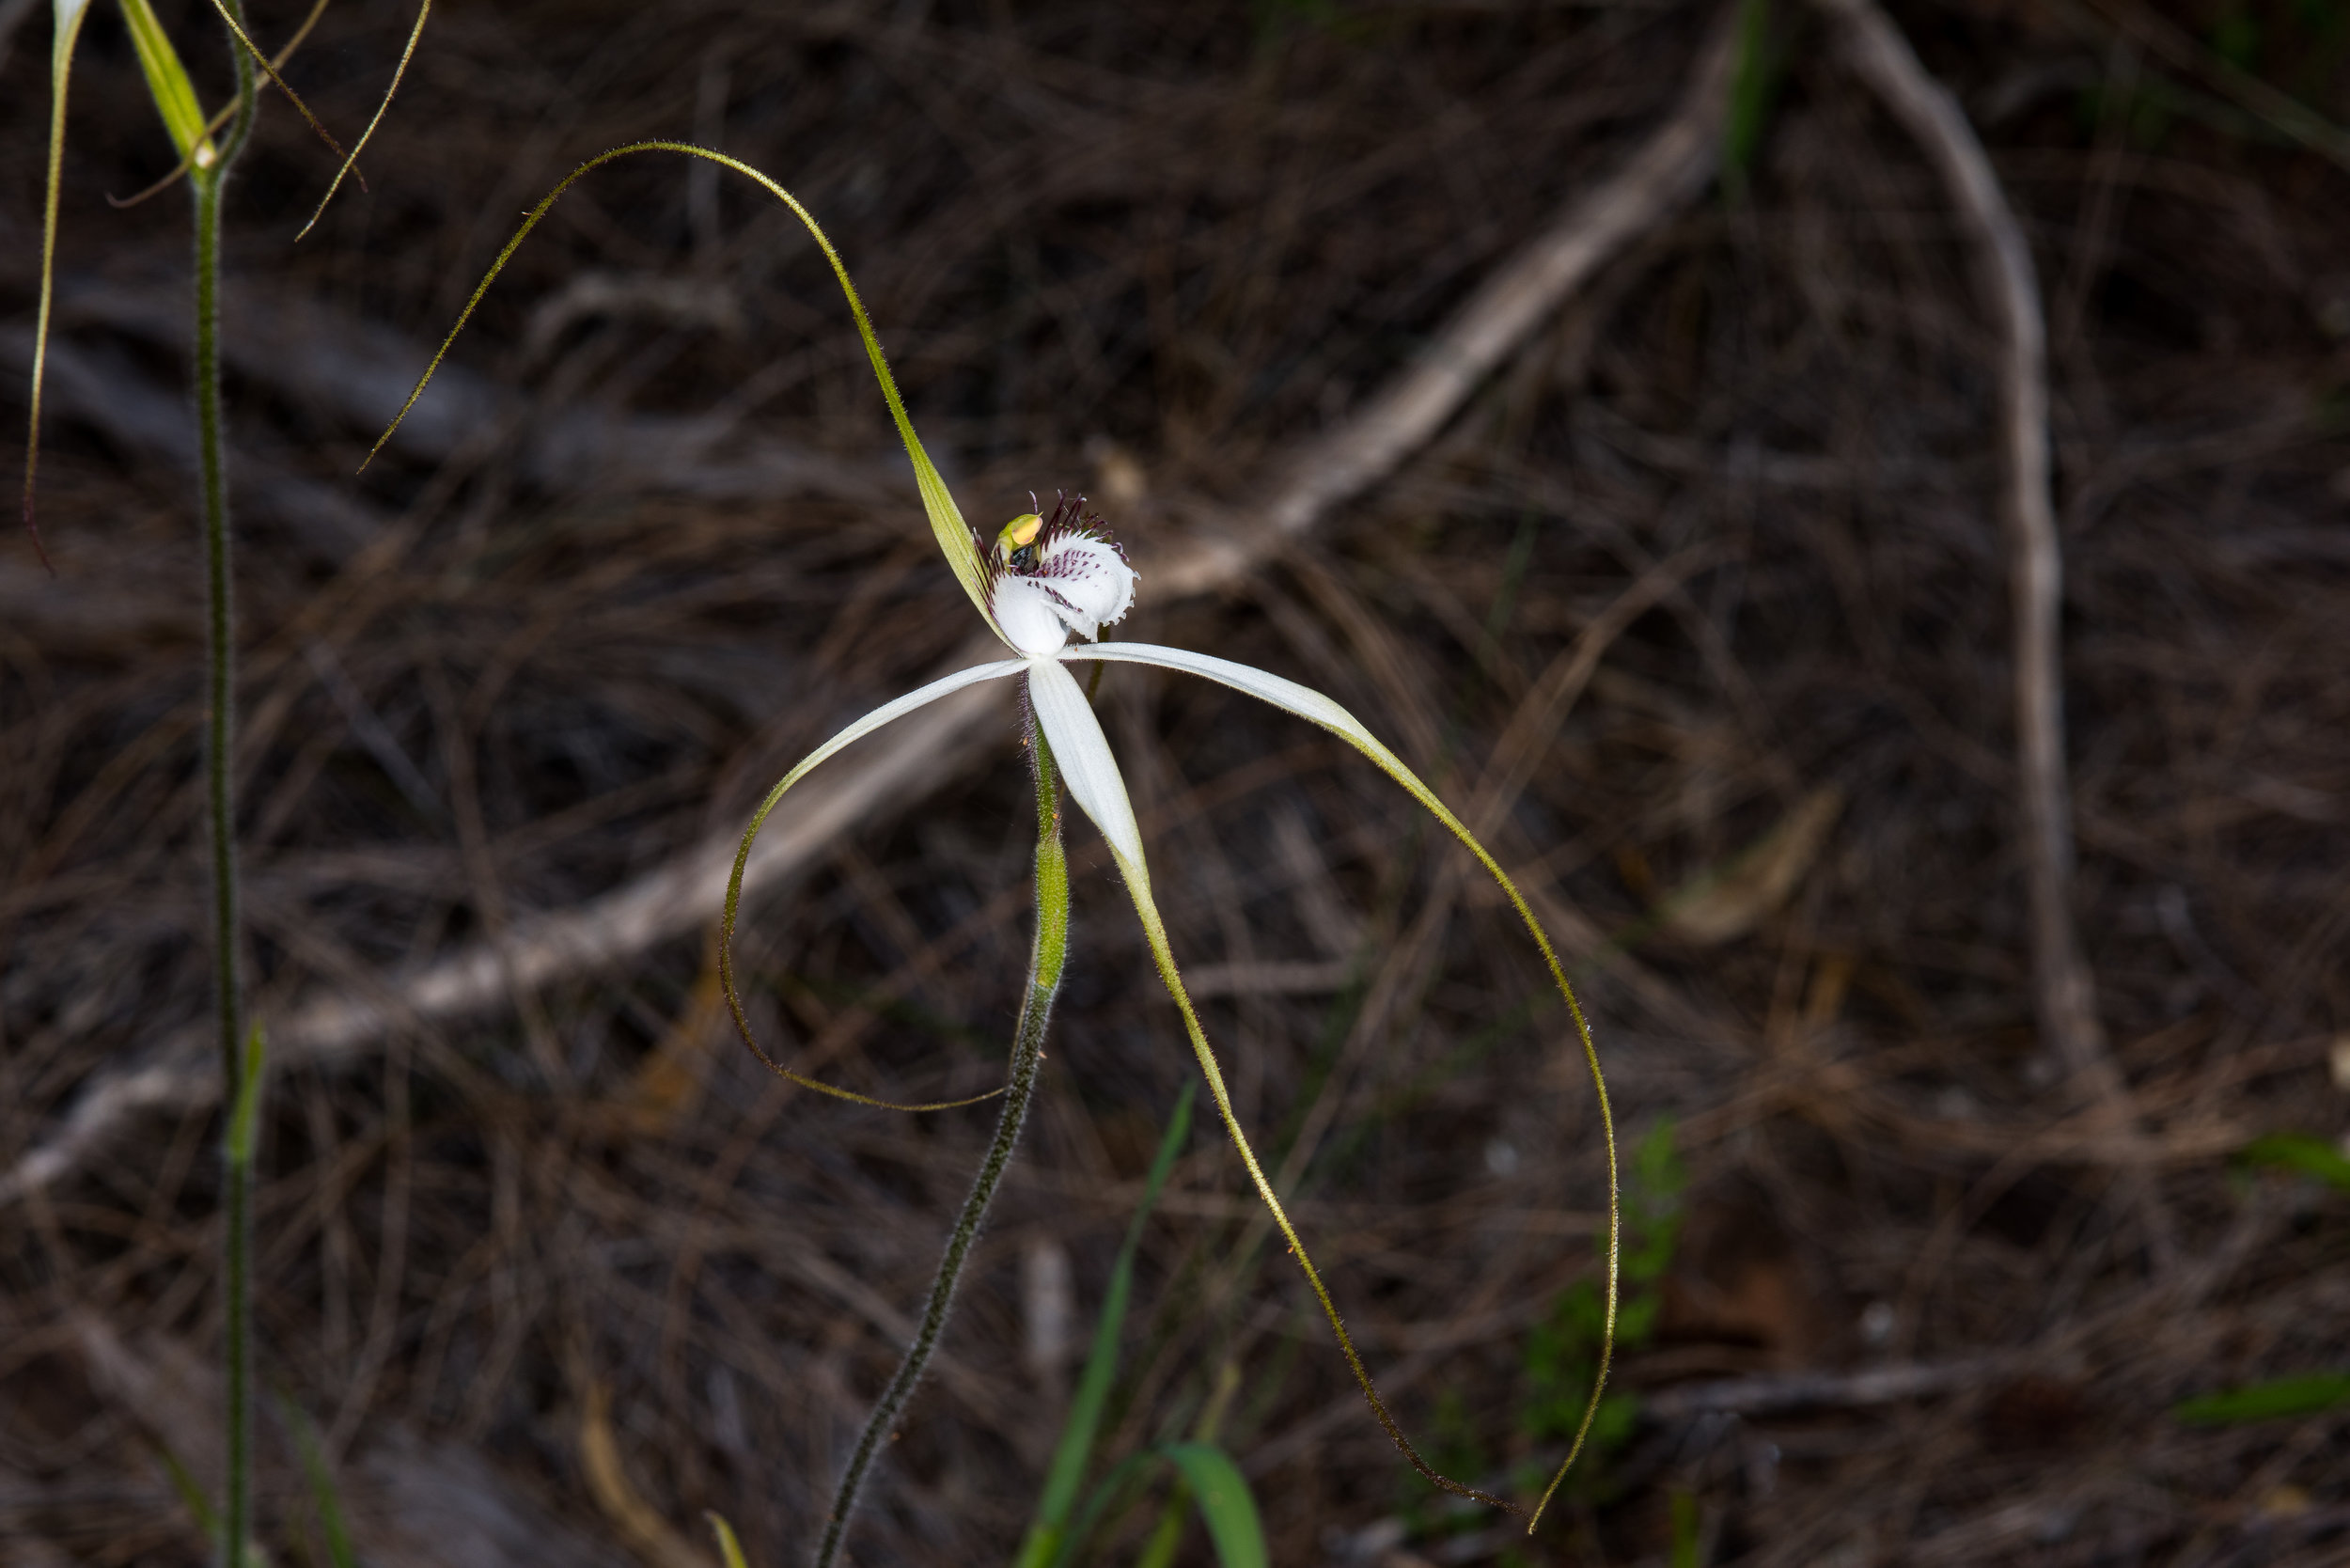  Caladenia longicauda sp. redacta - White spider orchid, Jerramungup 